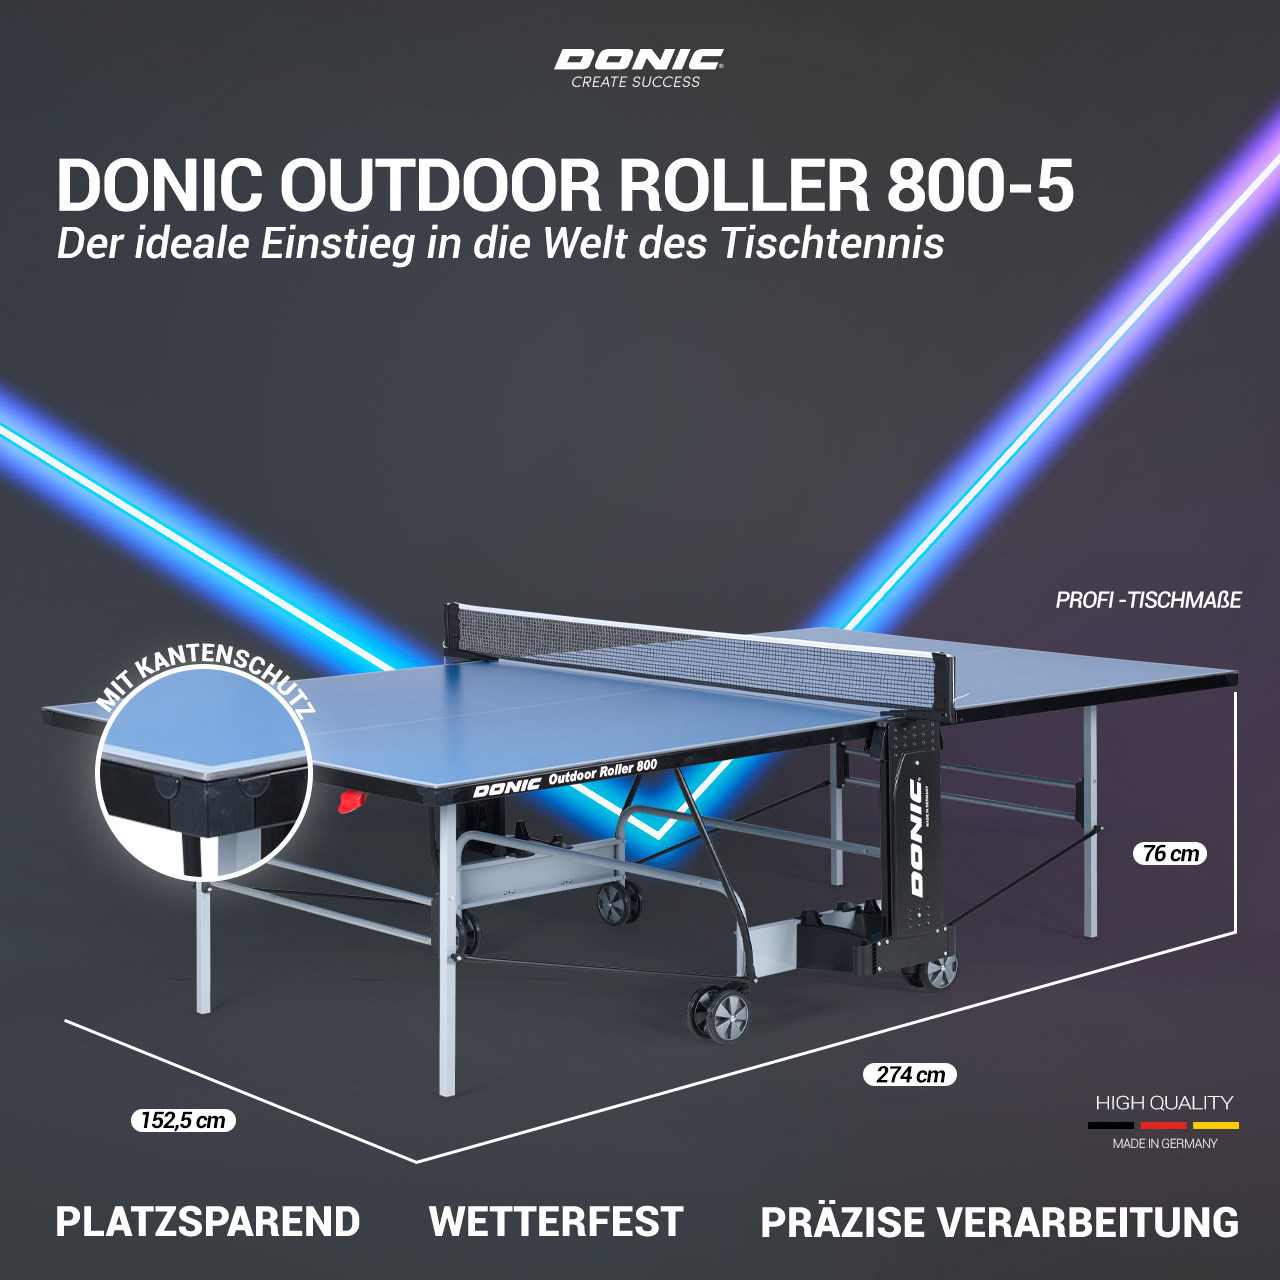 ᐅ Donic Outdoor Roller 800-5 | Eine Platte für draußen!